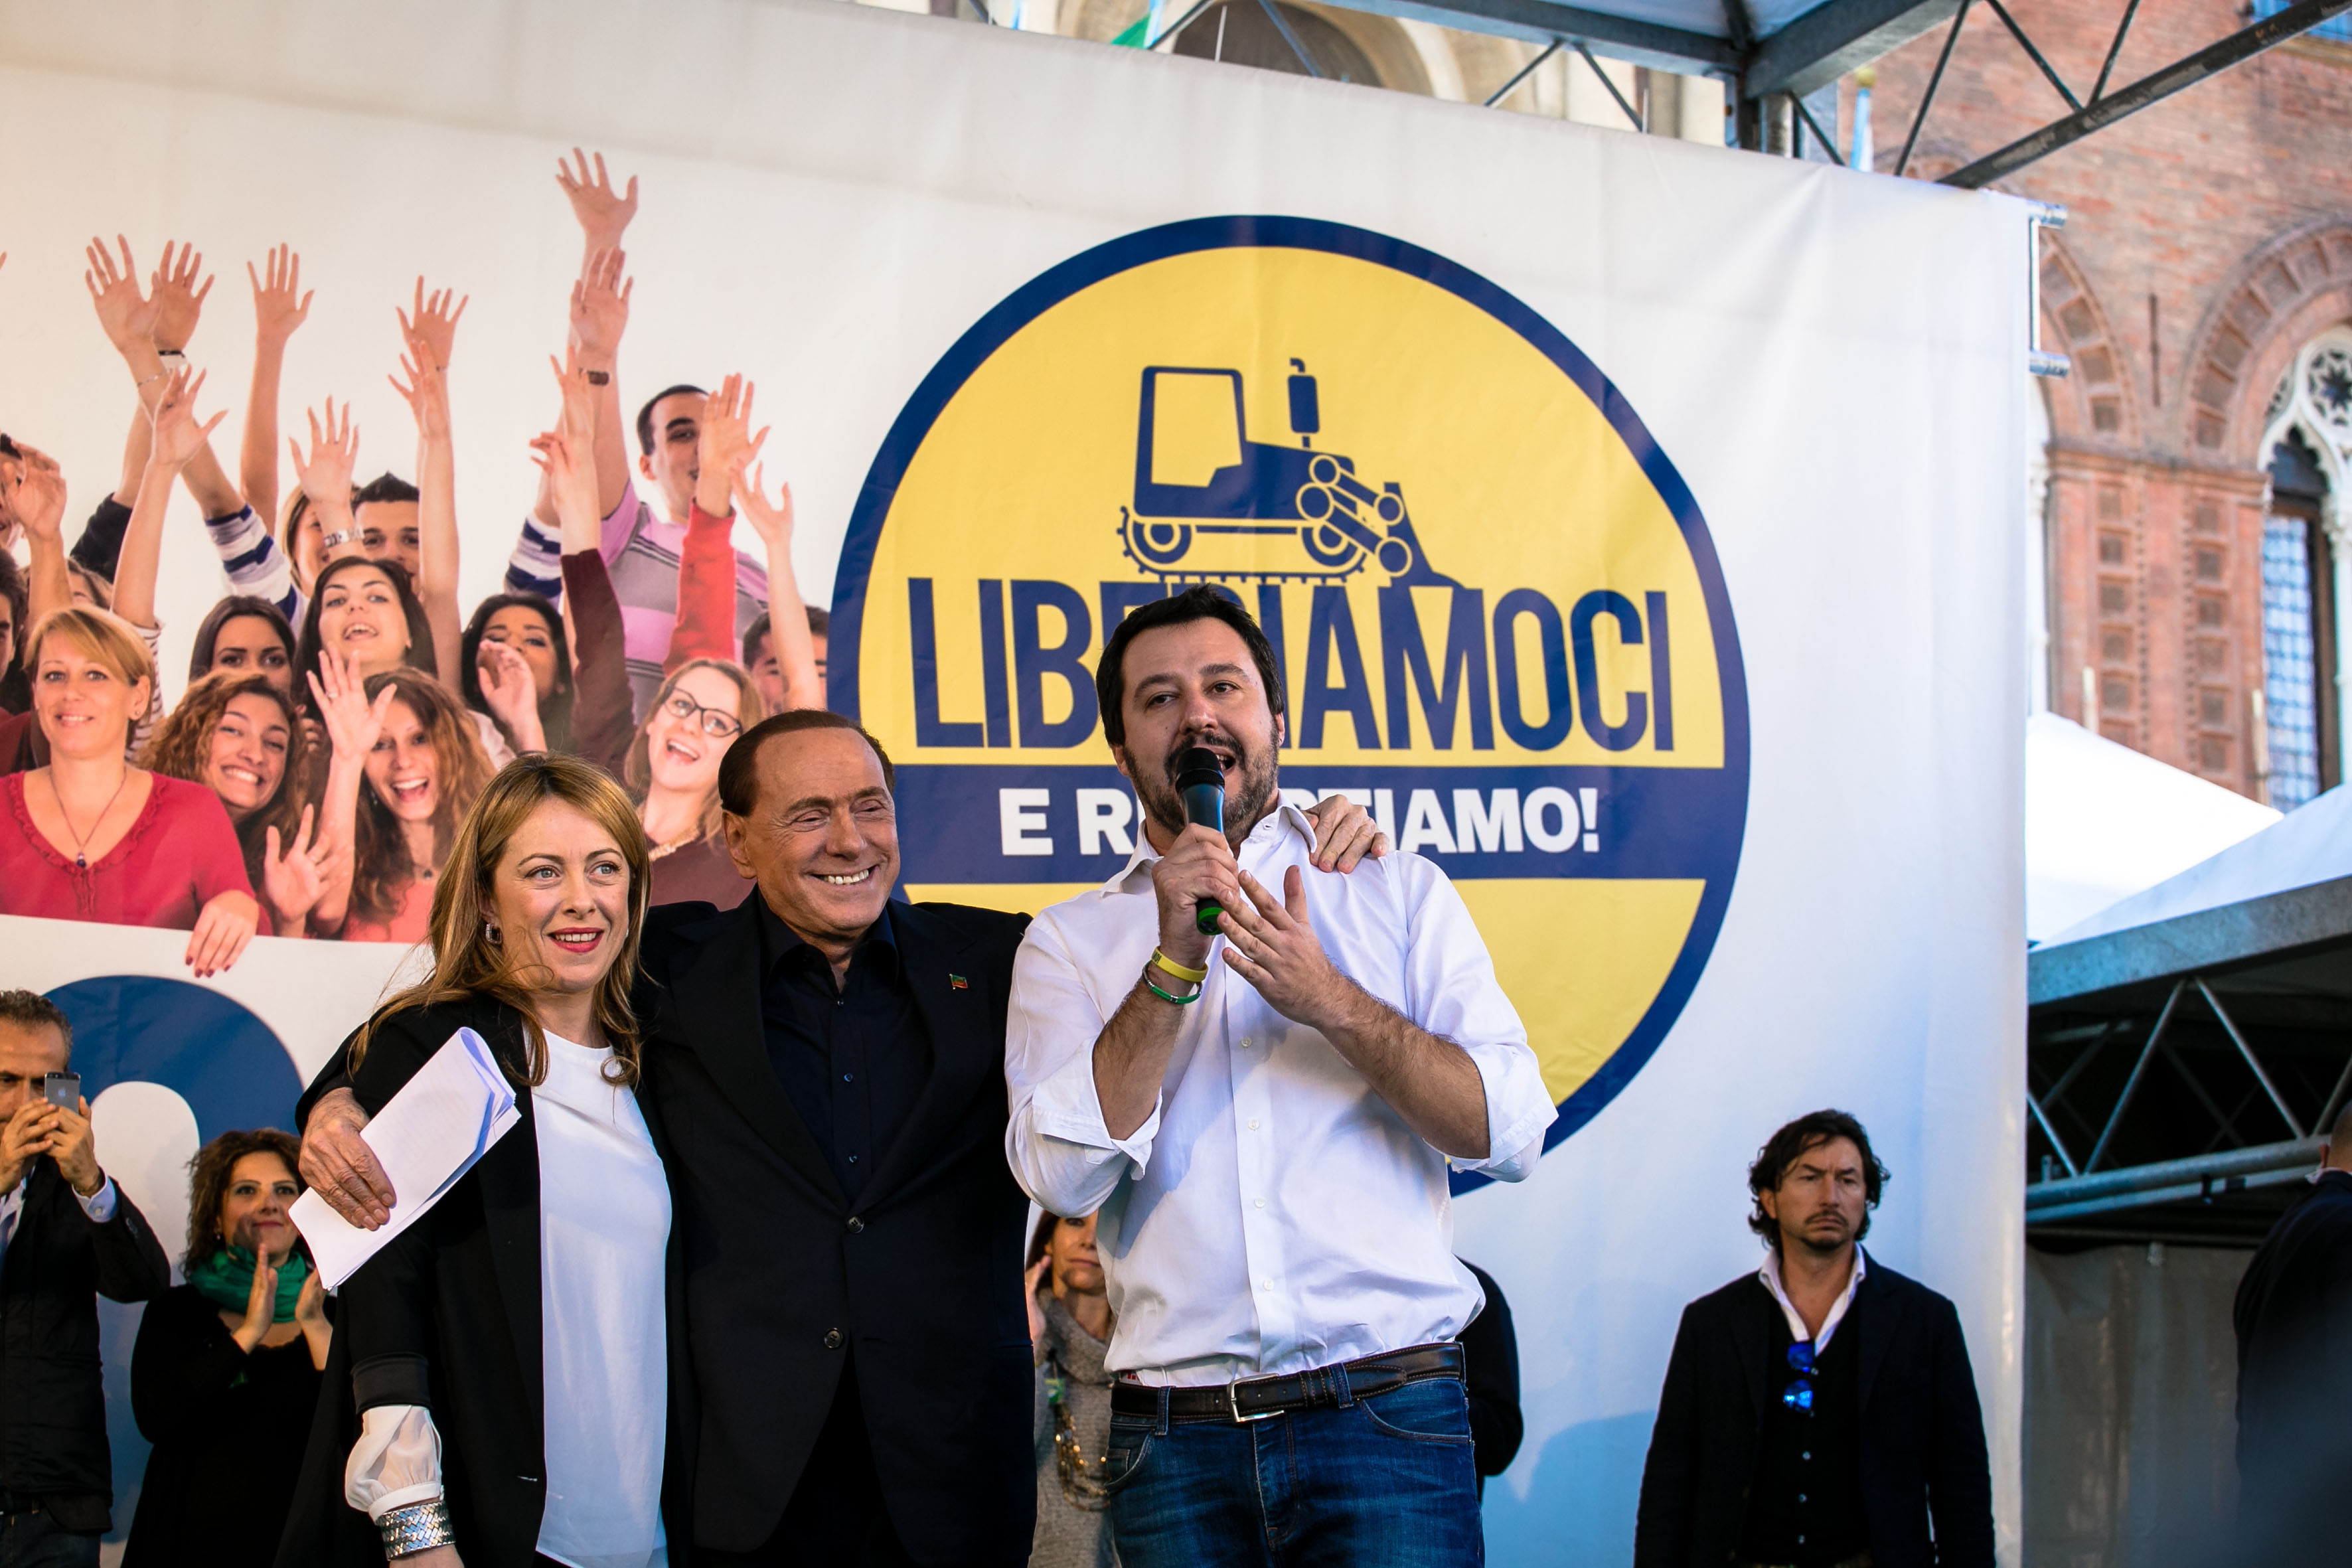 Giorgia Meloni, Silvio Berlusconi e Matteo Salvini, leader dei maggiori partiti del centrodestra (Fratelli d'italia, Forza Italia e Lega Nord).